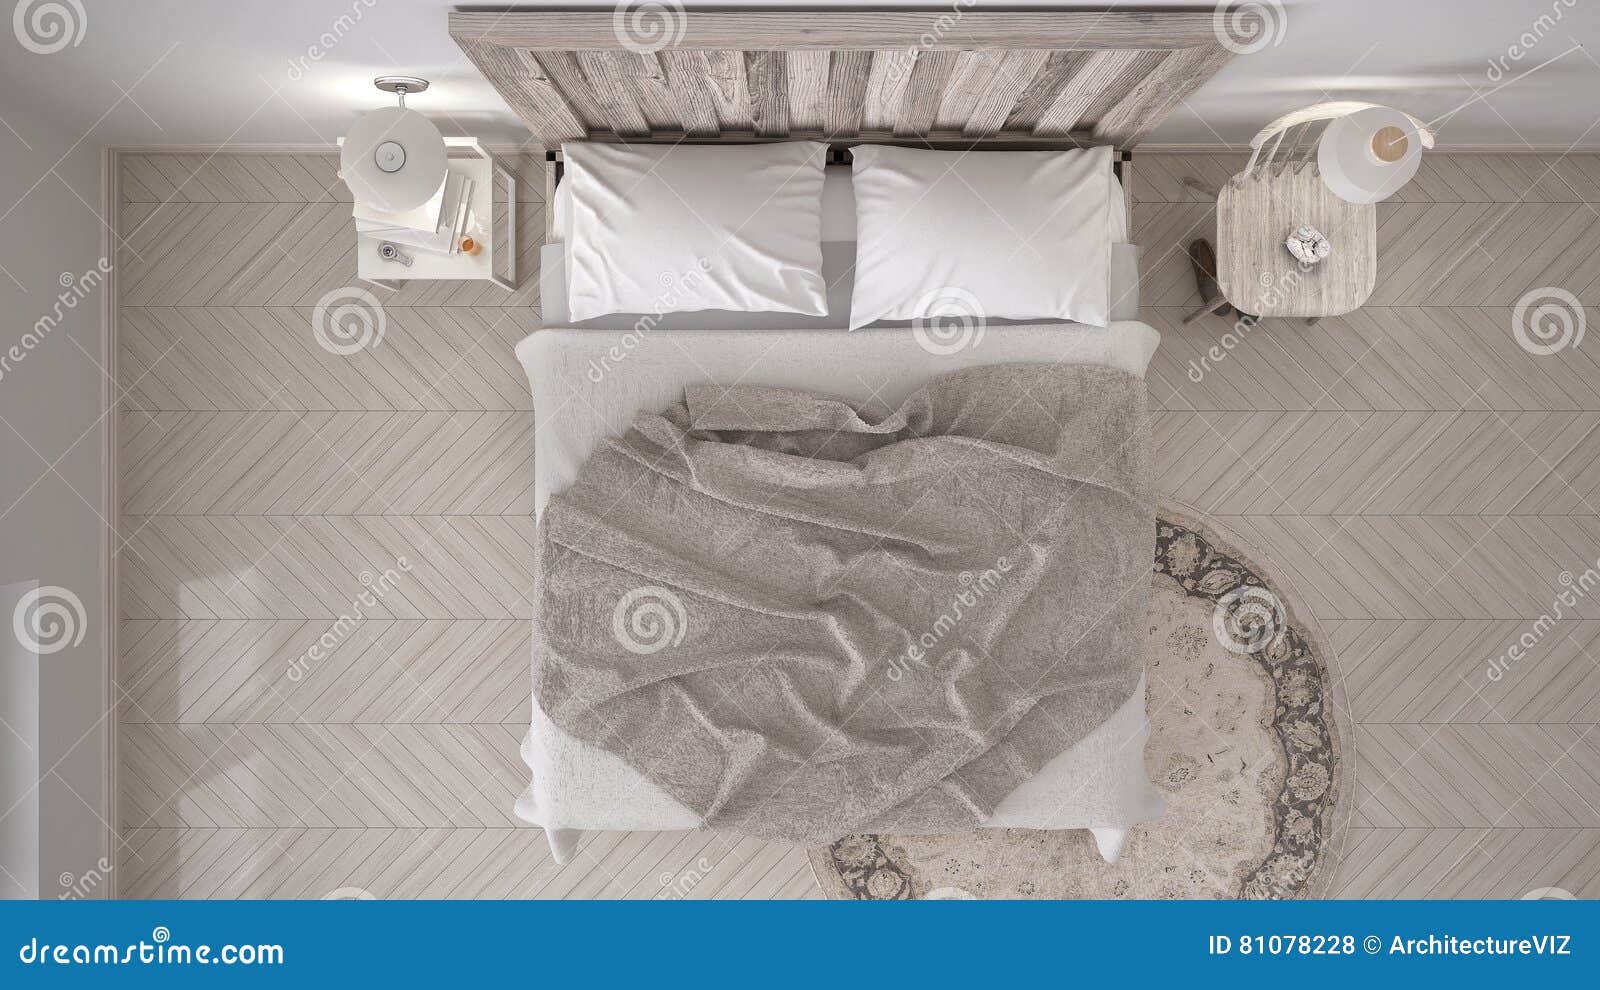 Diy Bedroom Bed With Wooden Headboard Scandinavian White Eco C